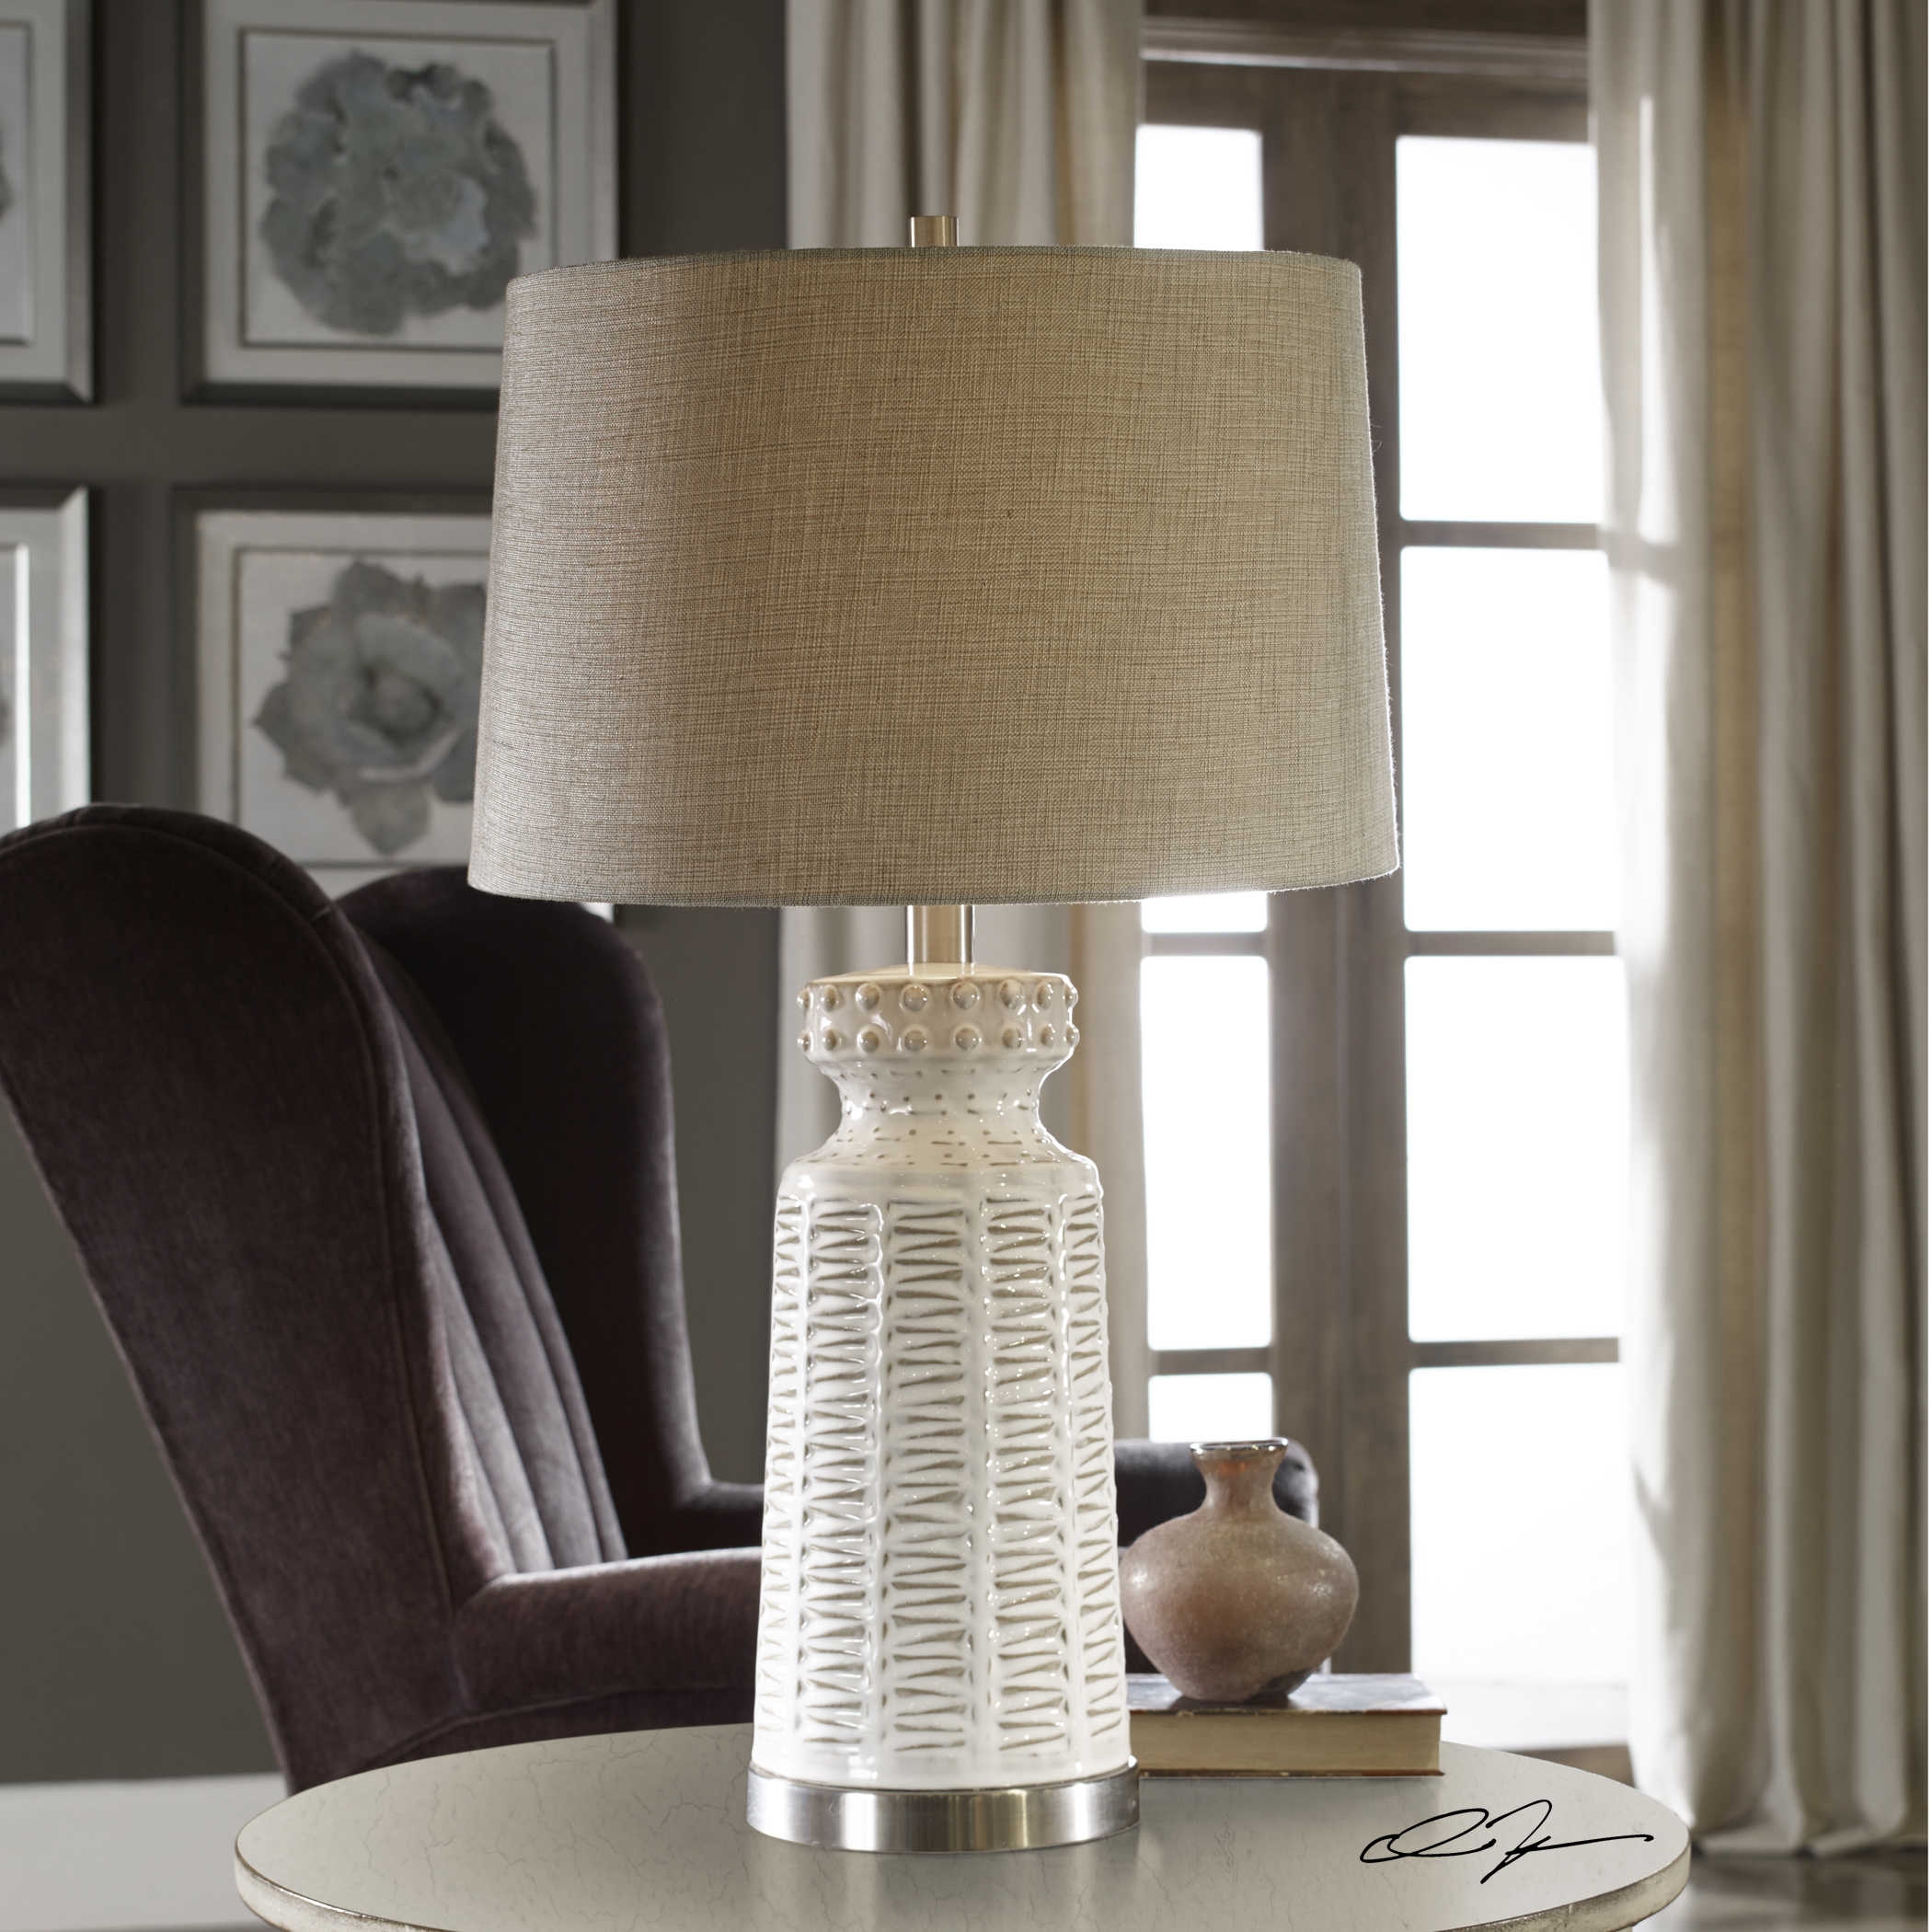 Kansa Distressed White Table Lamp - Image 2